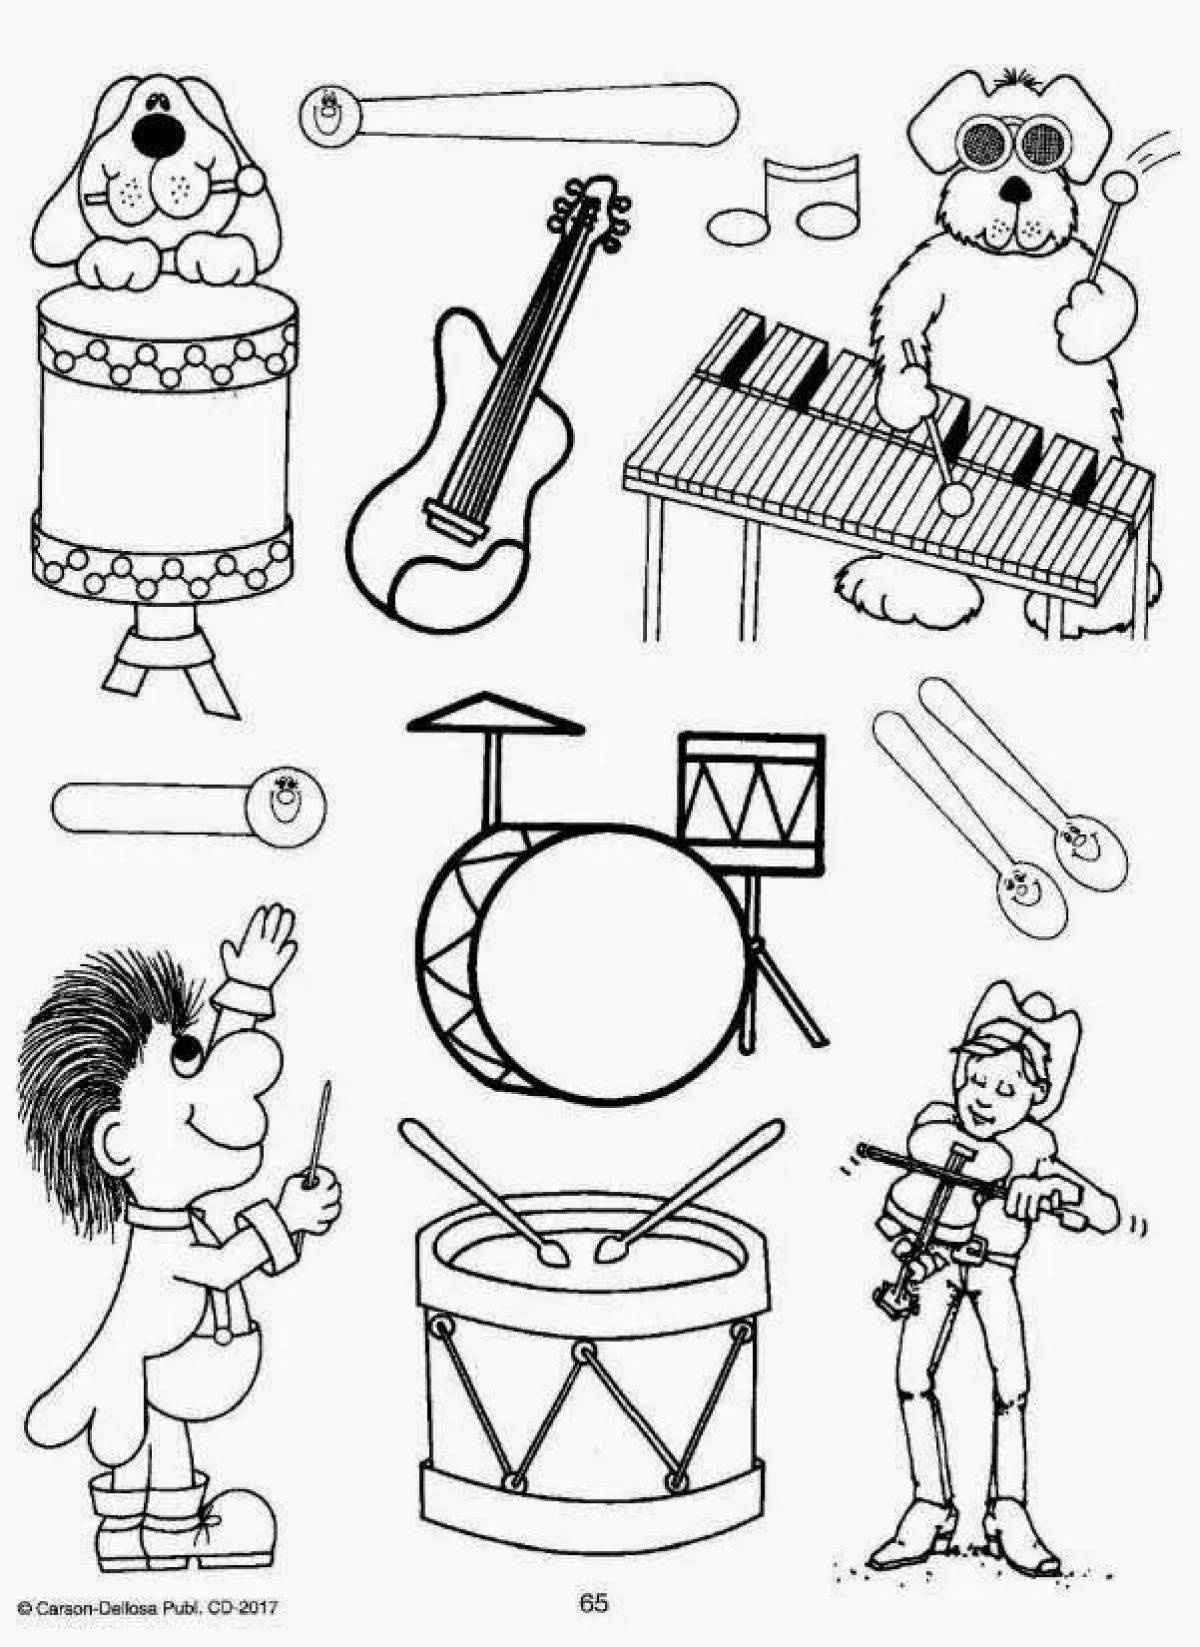 Игры на тему музыка. Раскраска музыкальные инструменты для детей. Раскраска для малышей музыкальные инструменты. Раскраска муз инструменты. Раскрась музыкальные инструменты.